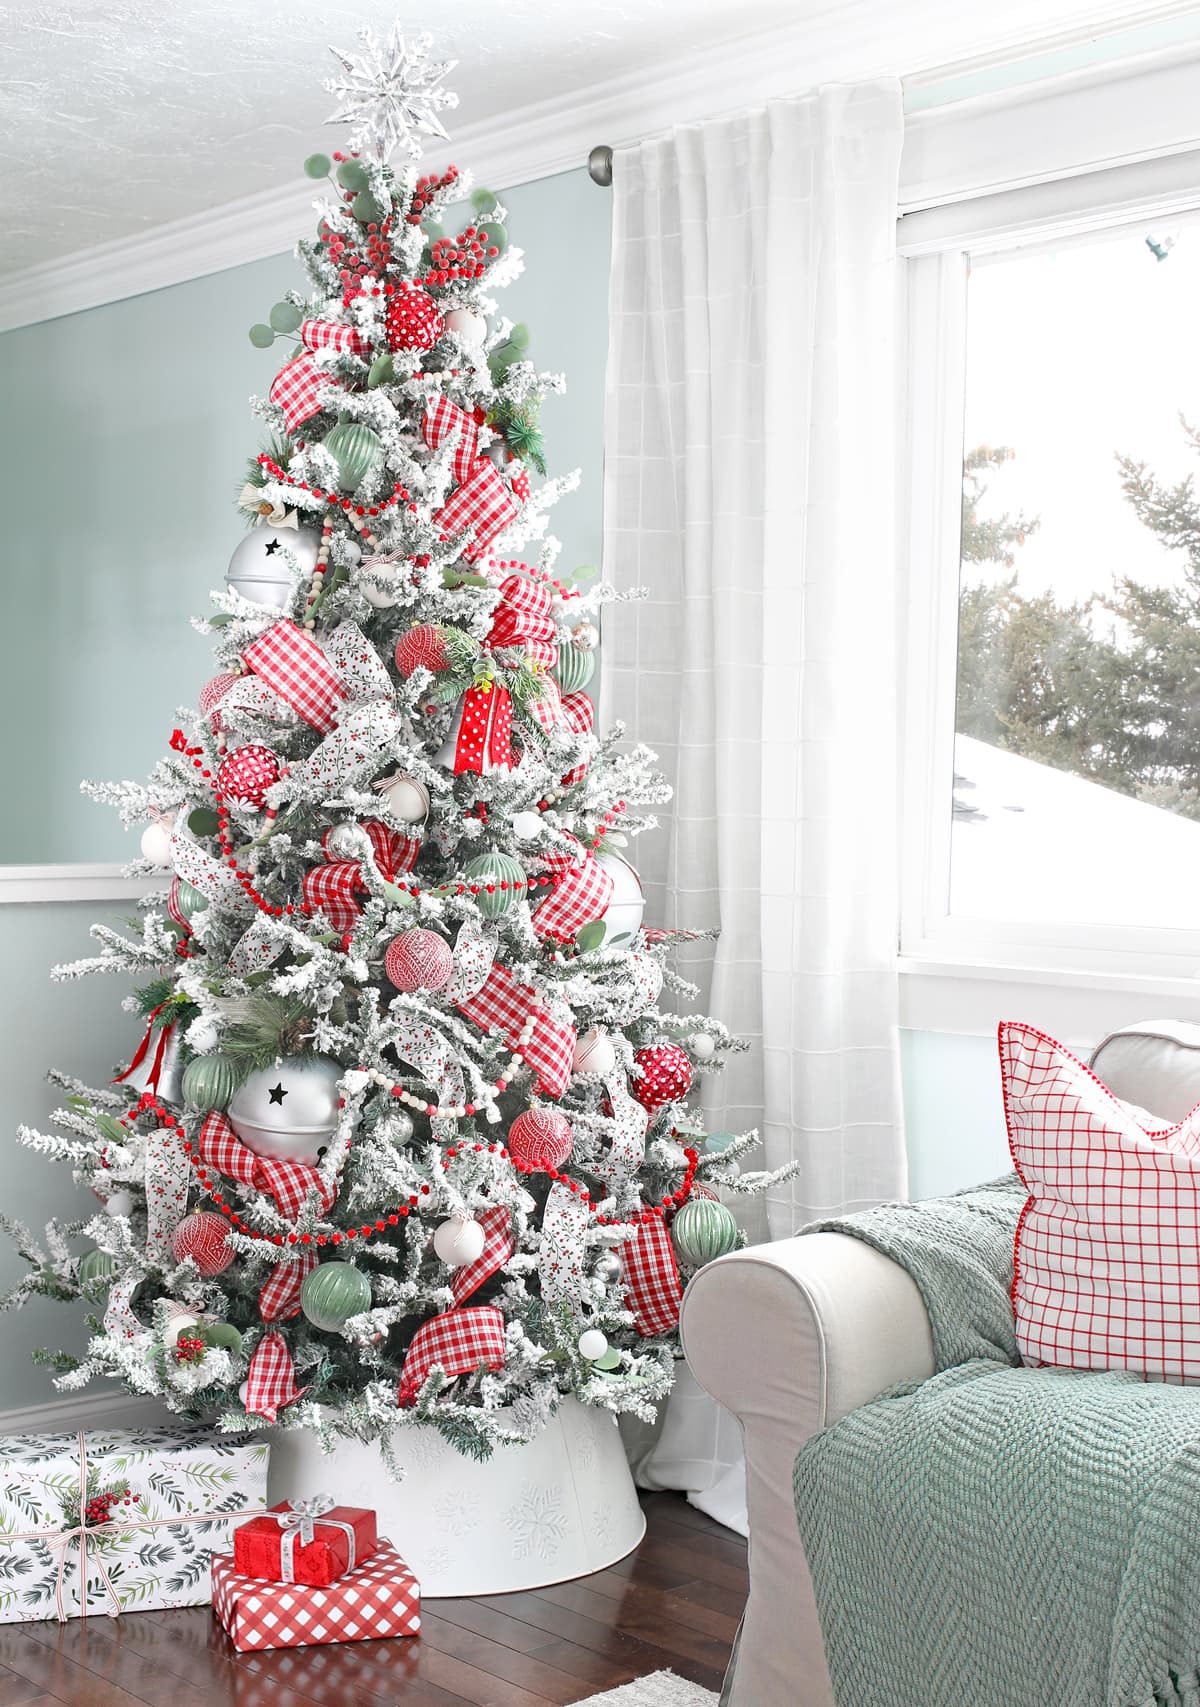 Christmas velvet ornaments - DIY Home Decor - Tutorial for beginners 